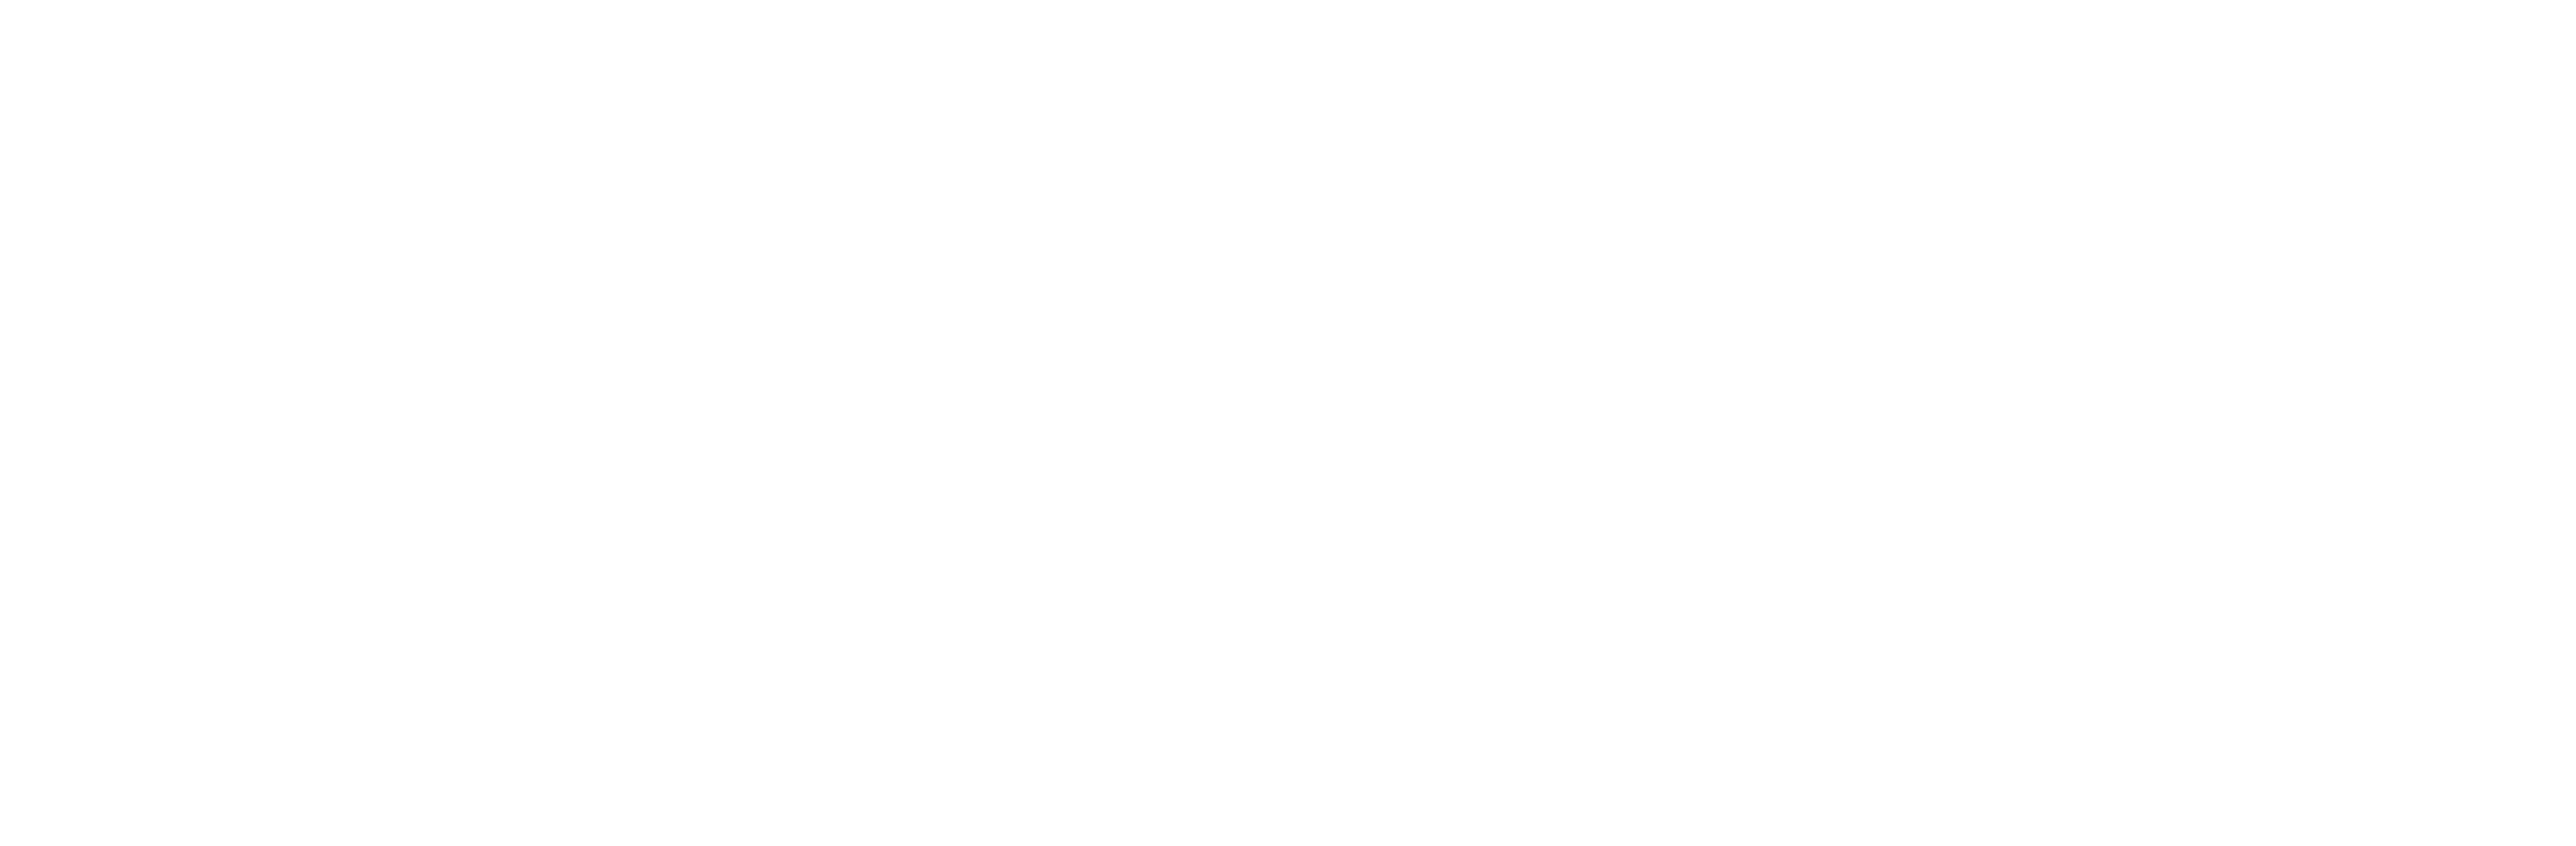 RENT A DRIVER SERVICES - Doha Cabs Limousine Services